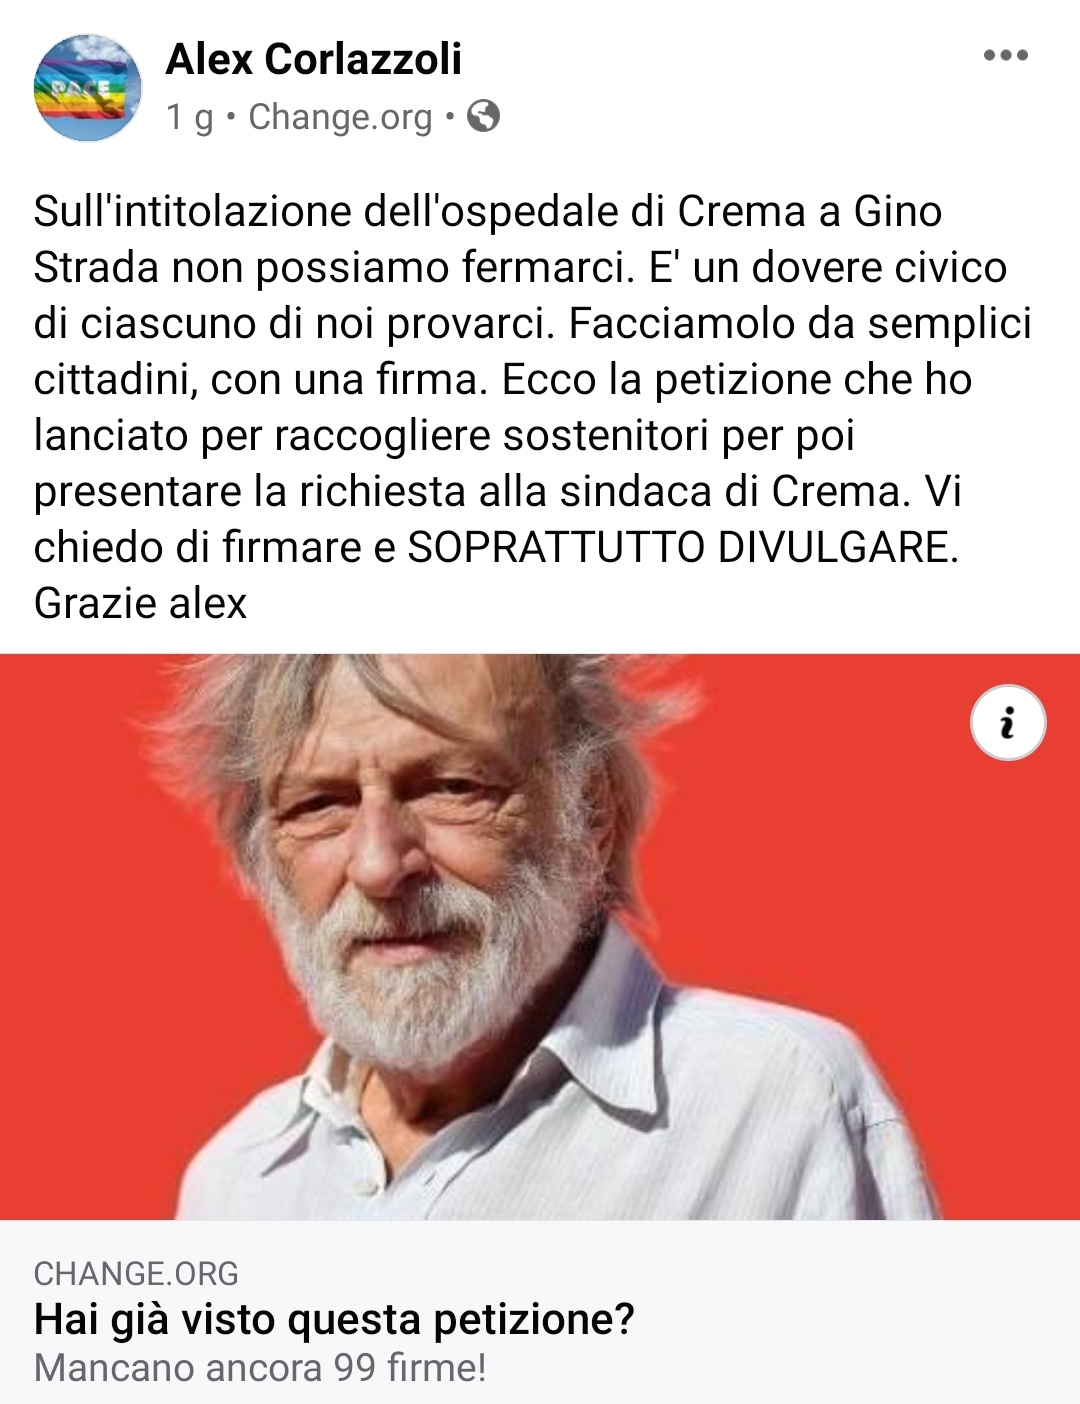 Il giornalista, scrittore, viaggiatore e Maestro d’Italia Alex Corlazzoli lancia la raccolta firme per intitolare l’ospedale di Crema e Gino Strada